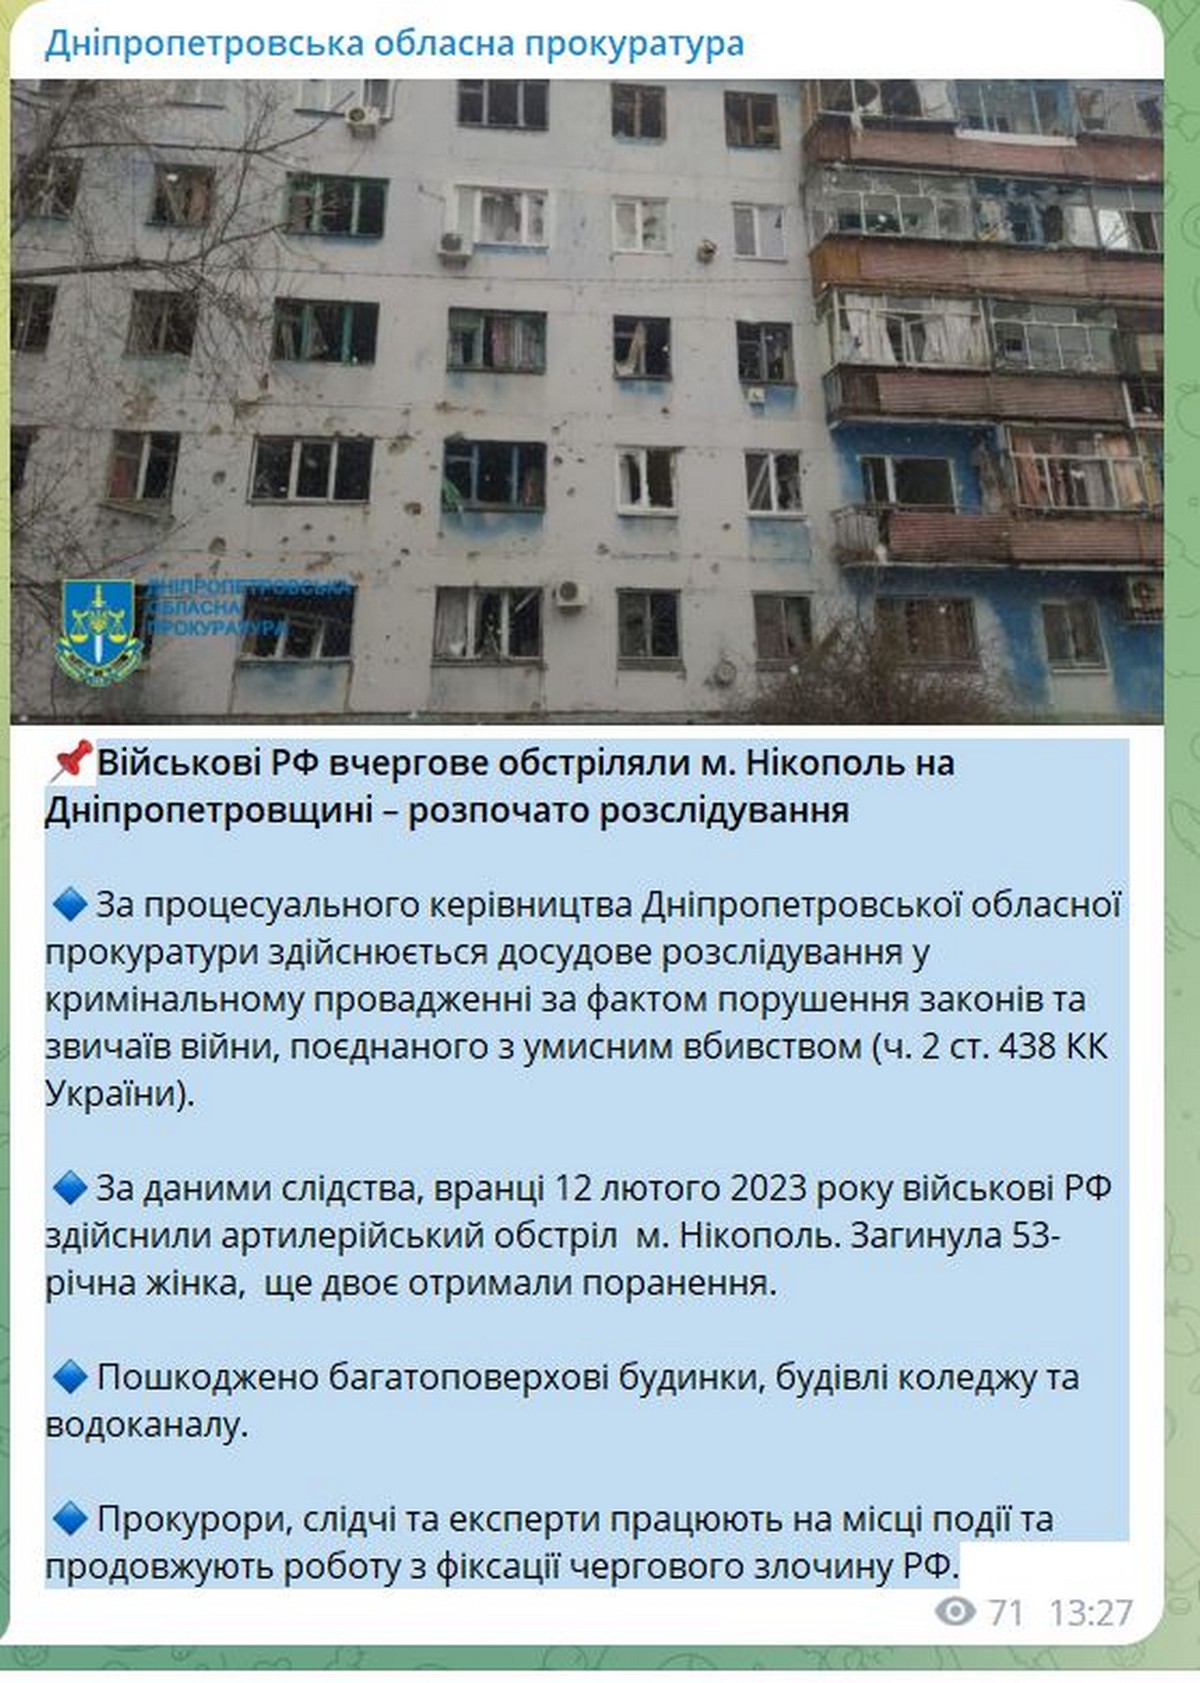 Військові РФ вчергове обстріляли Нікополь, двоє поранених, одна загибла - прокуратура